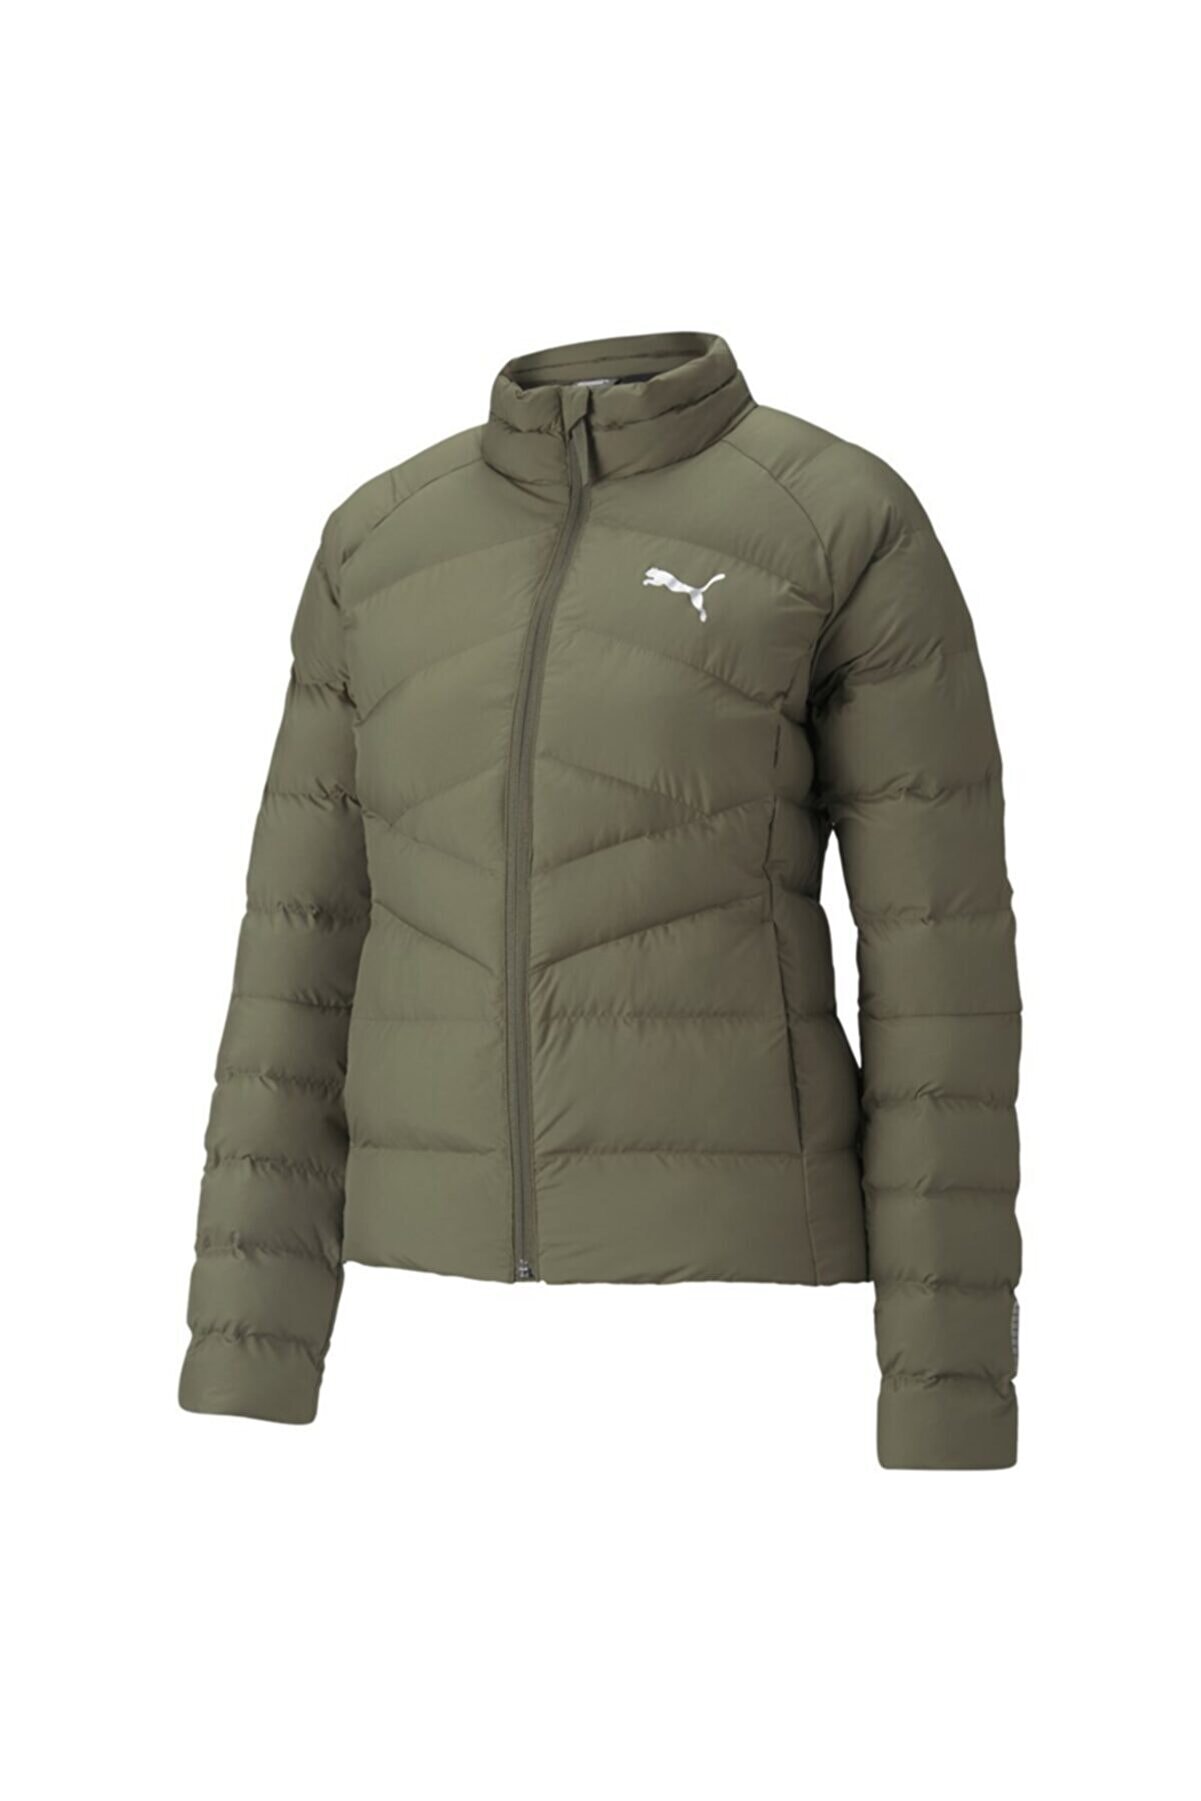 Puma Warmcell Lightweight Jacket - Kadın Yeşil Mont